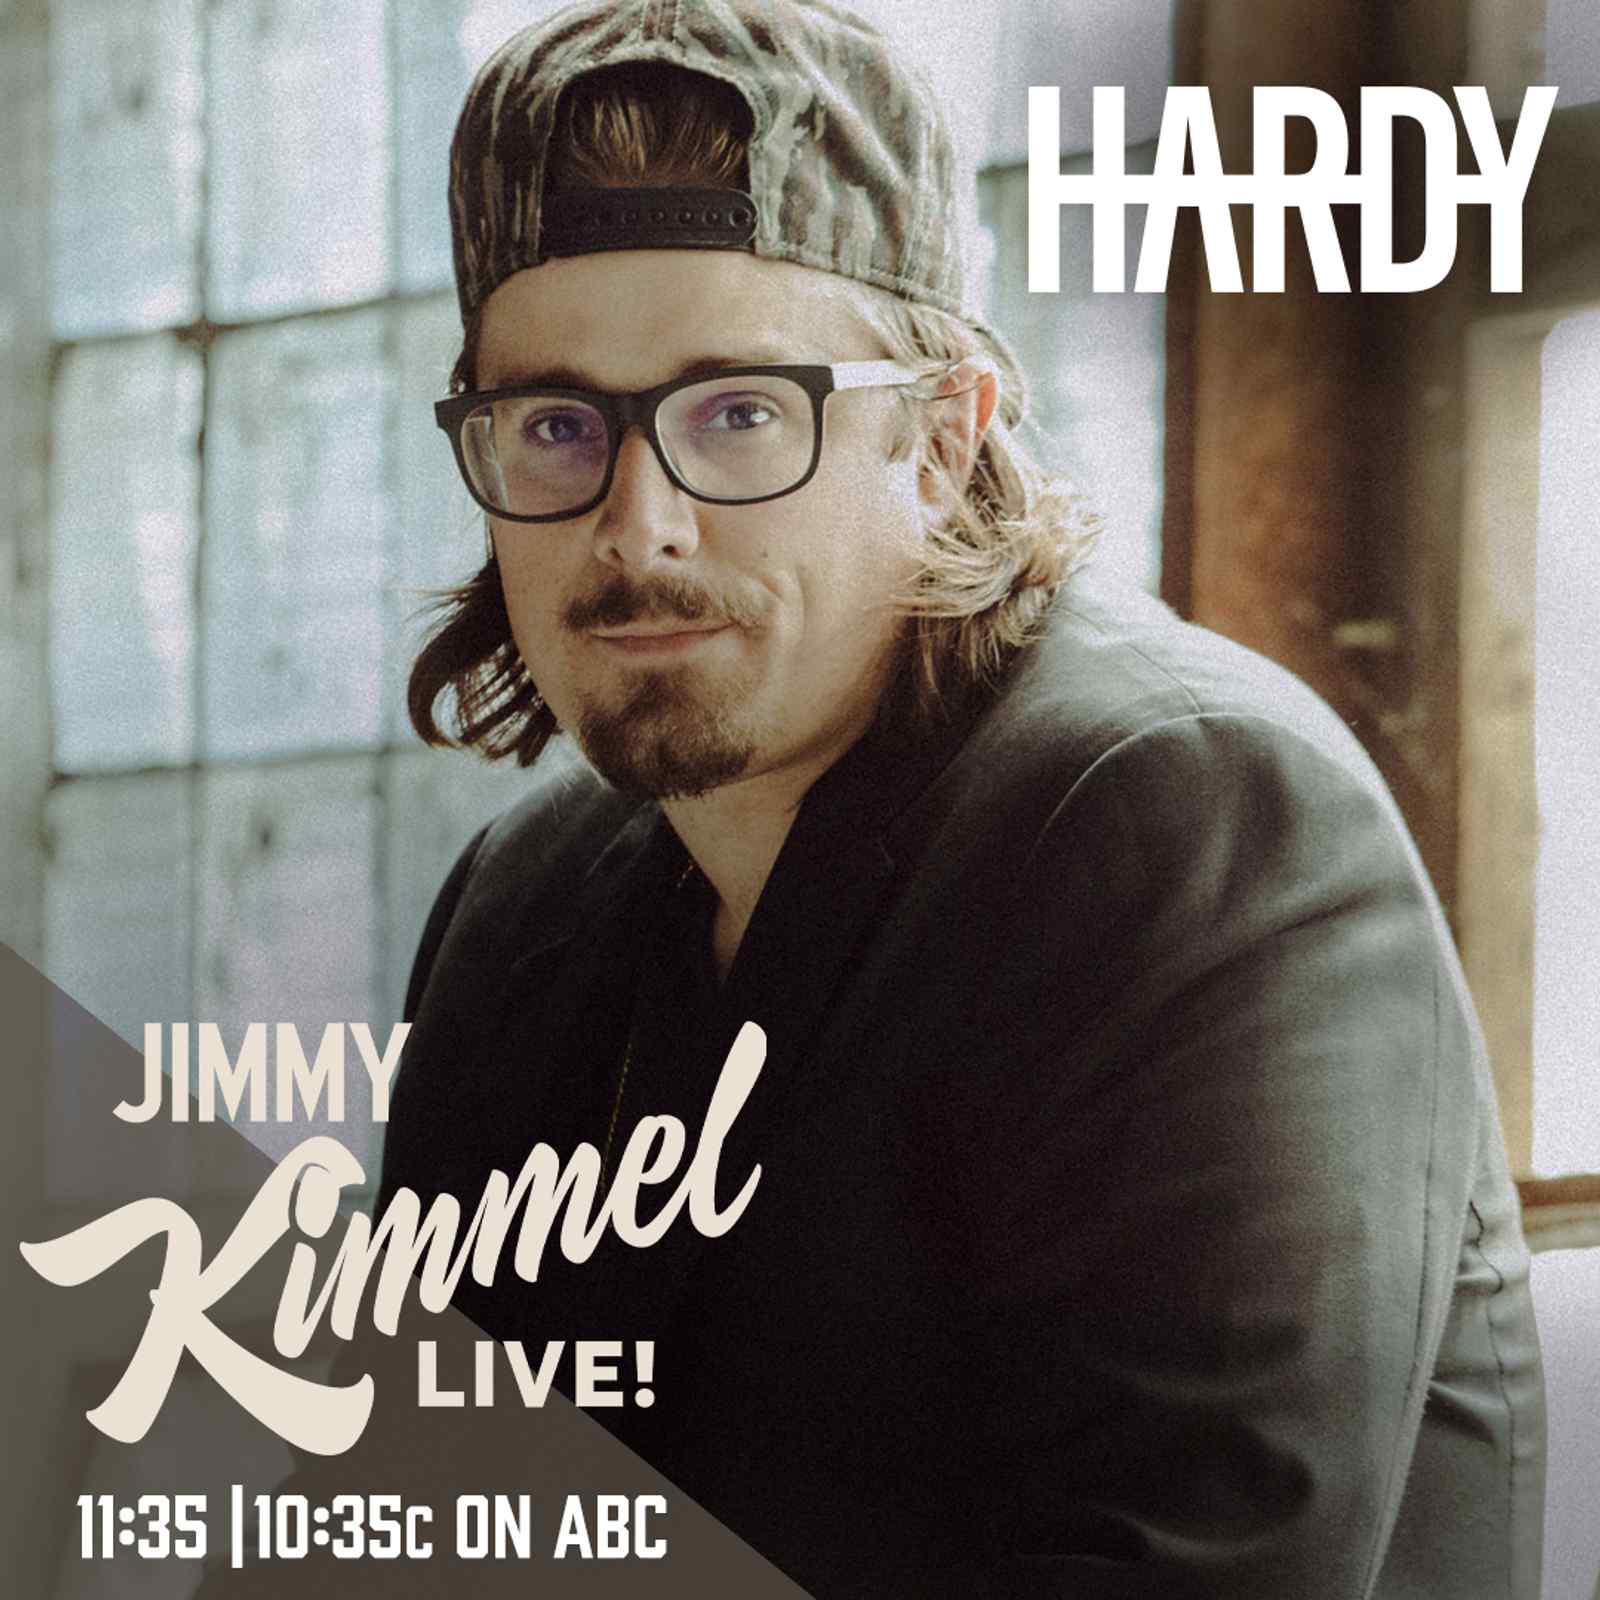 Jimmy Kimmel Live!: HARDY